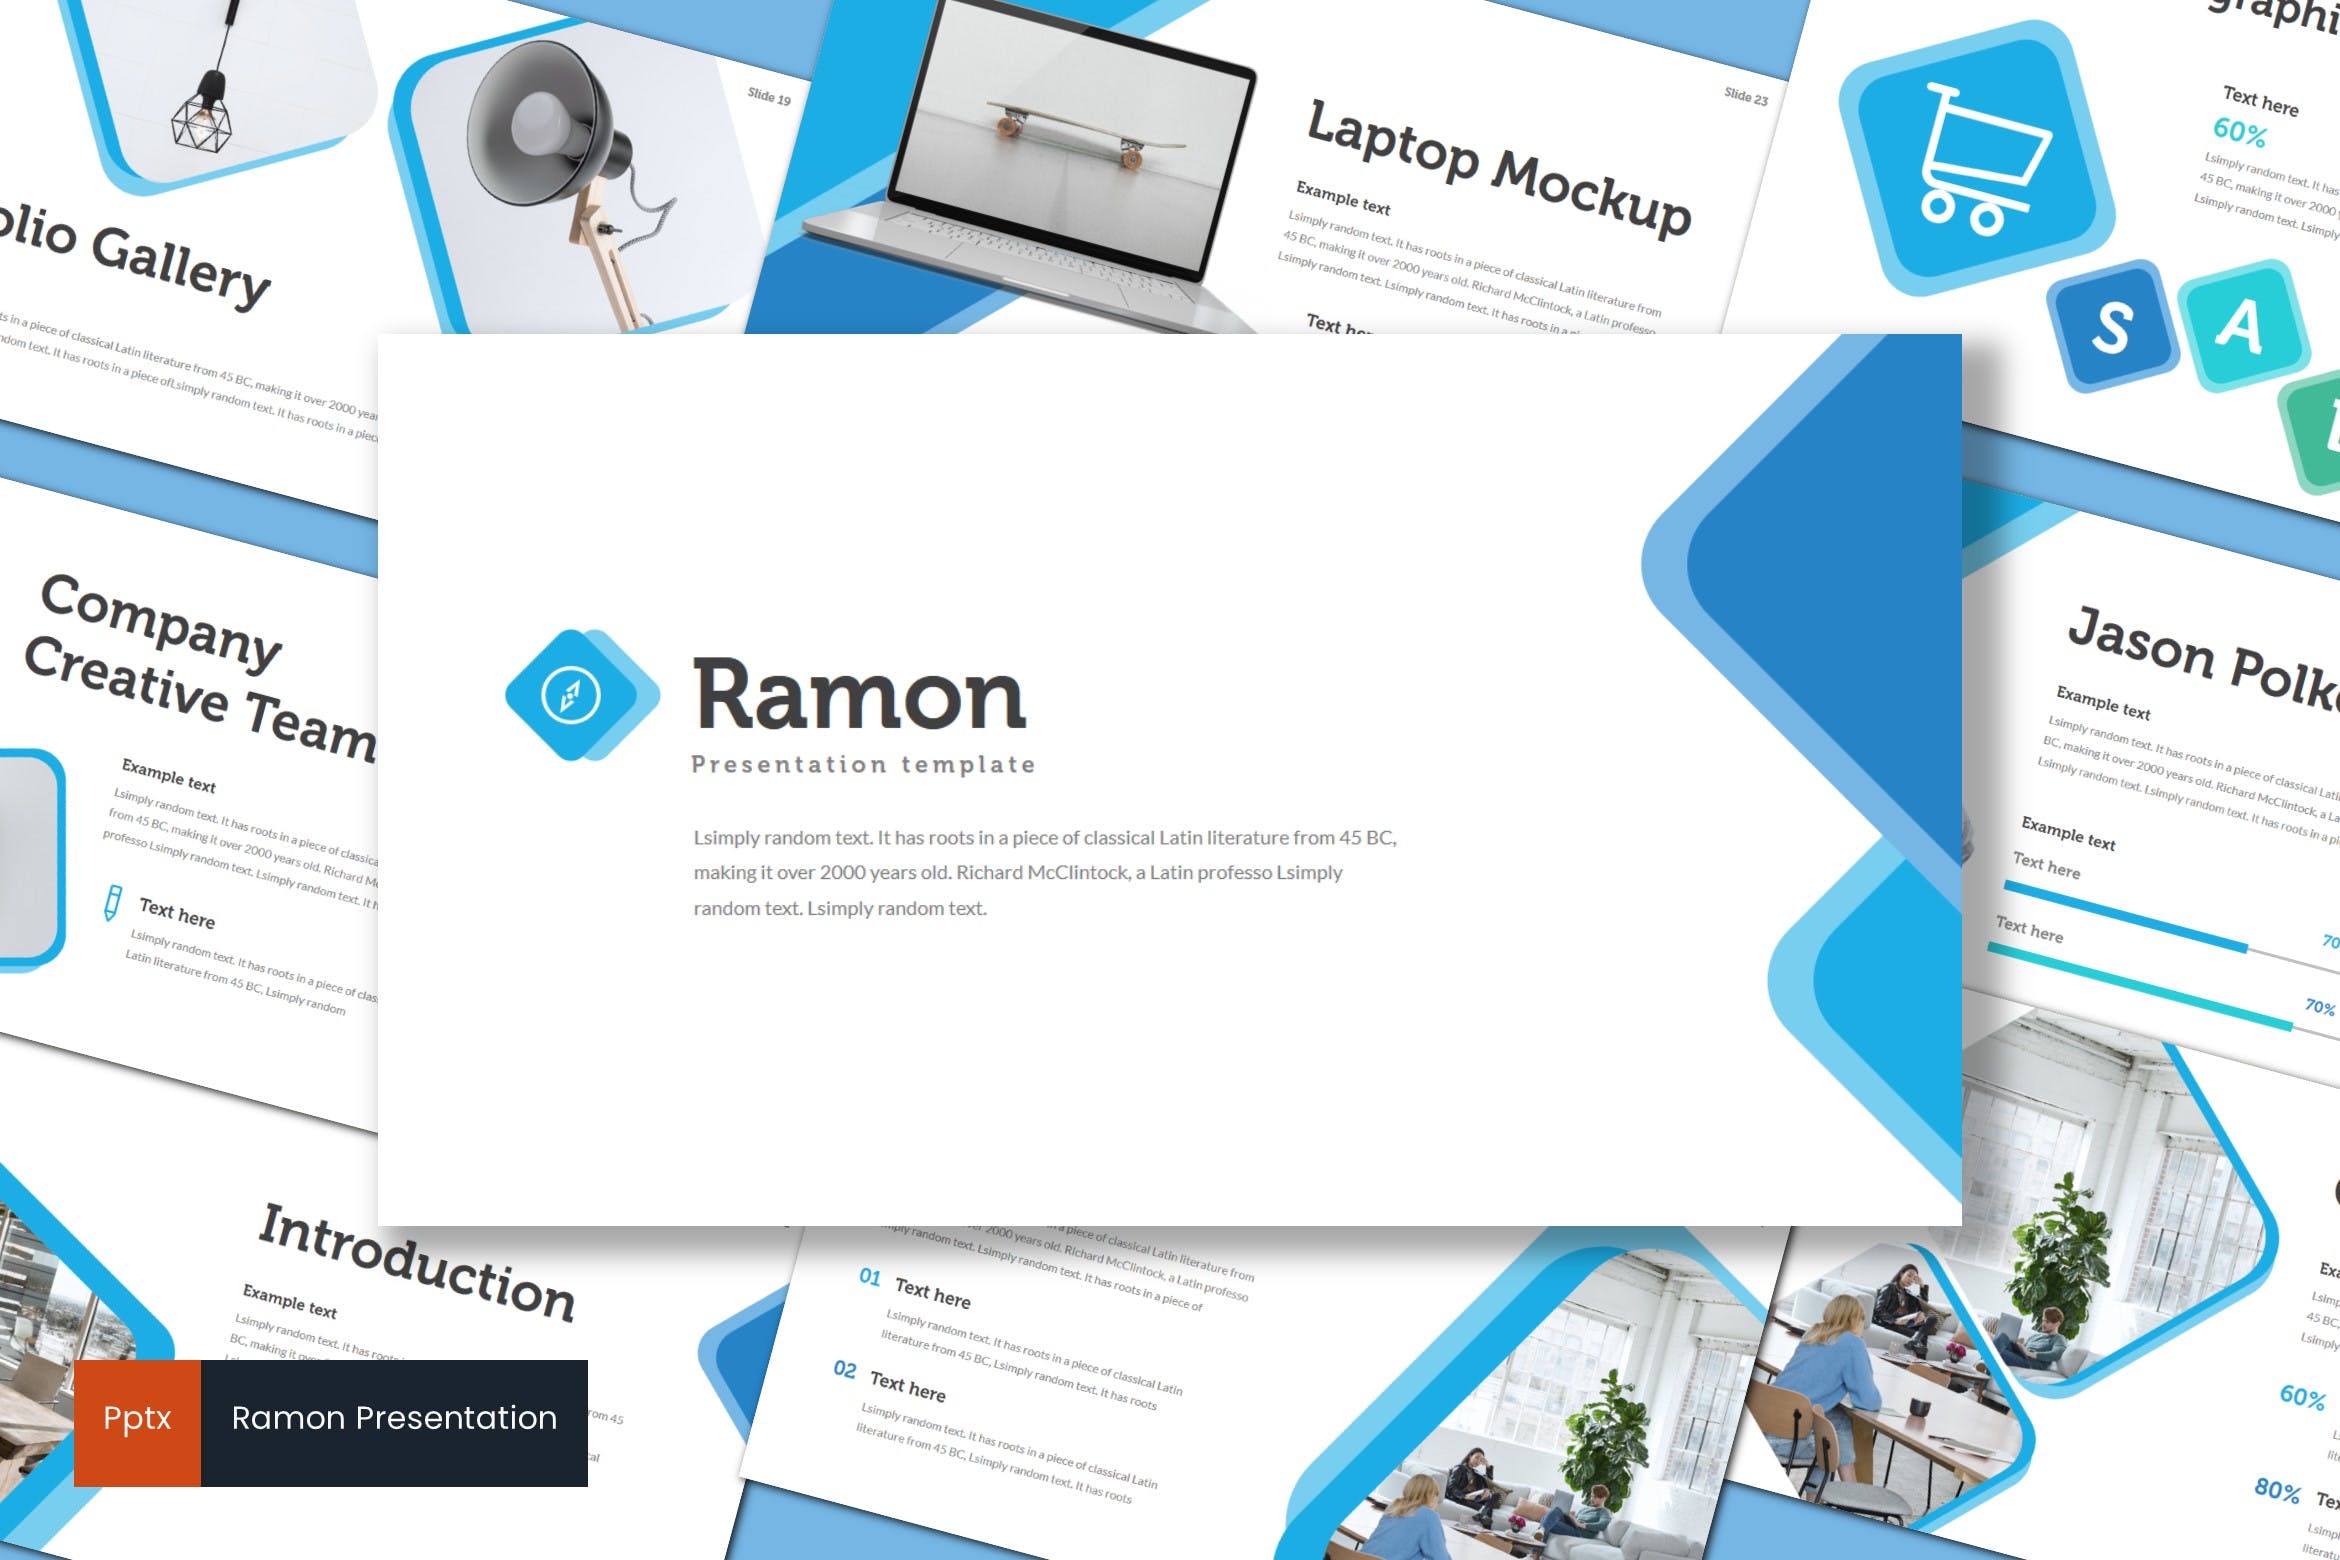 室内设计品牌宣传素材库精选PPT模板 Ramon – Powerpoint Template插图